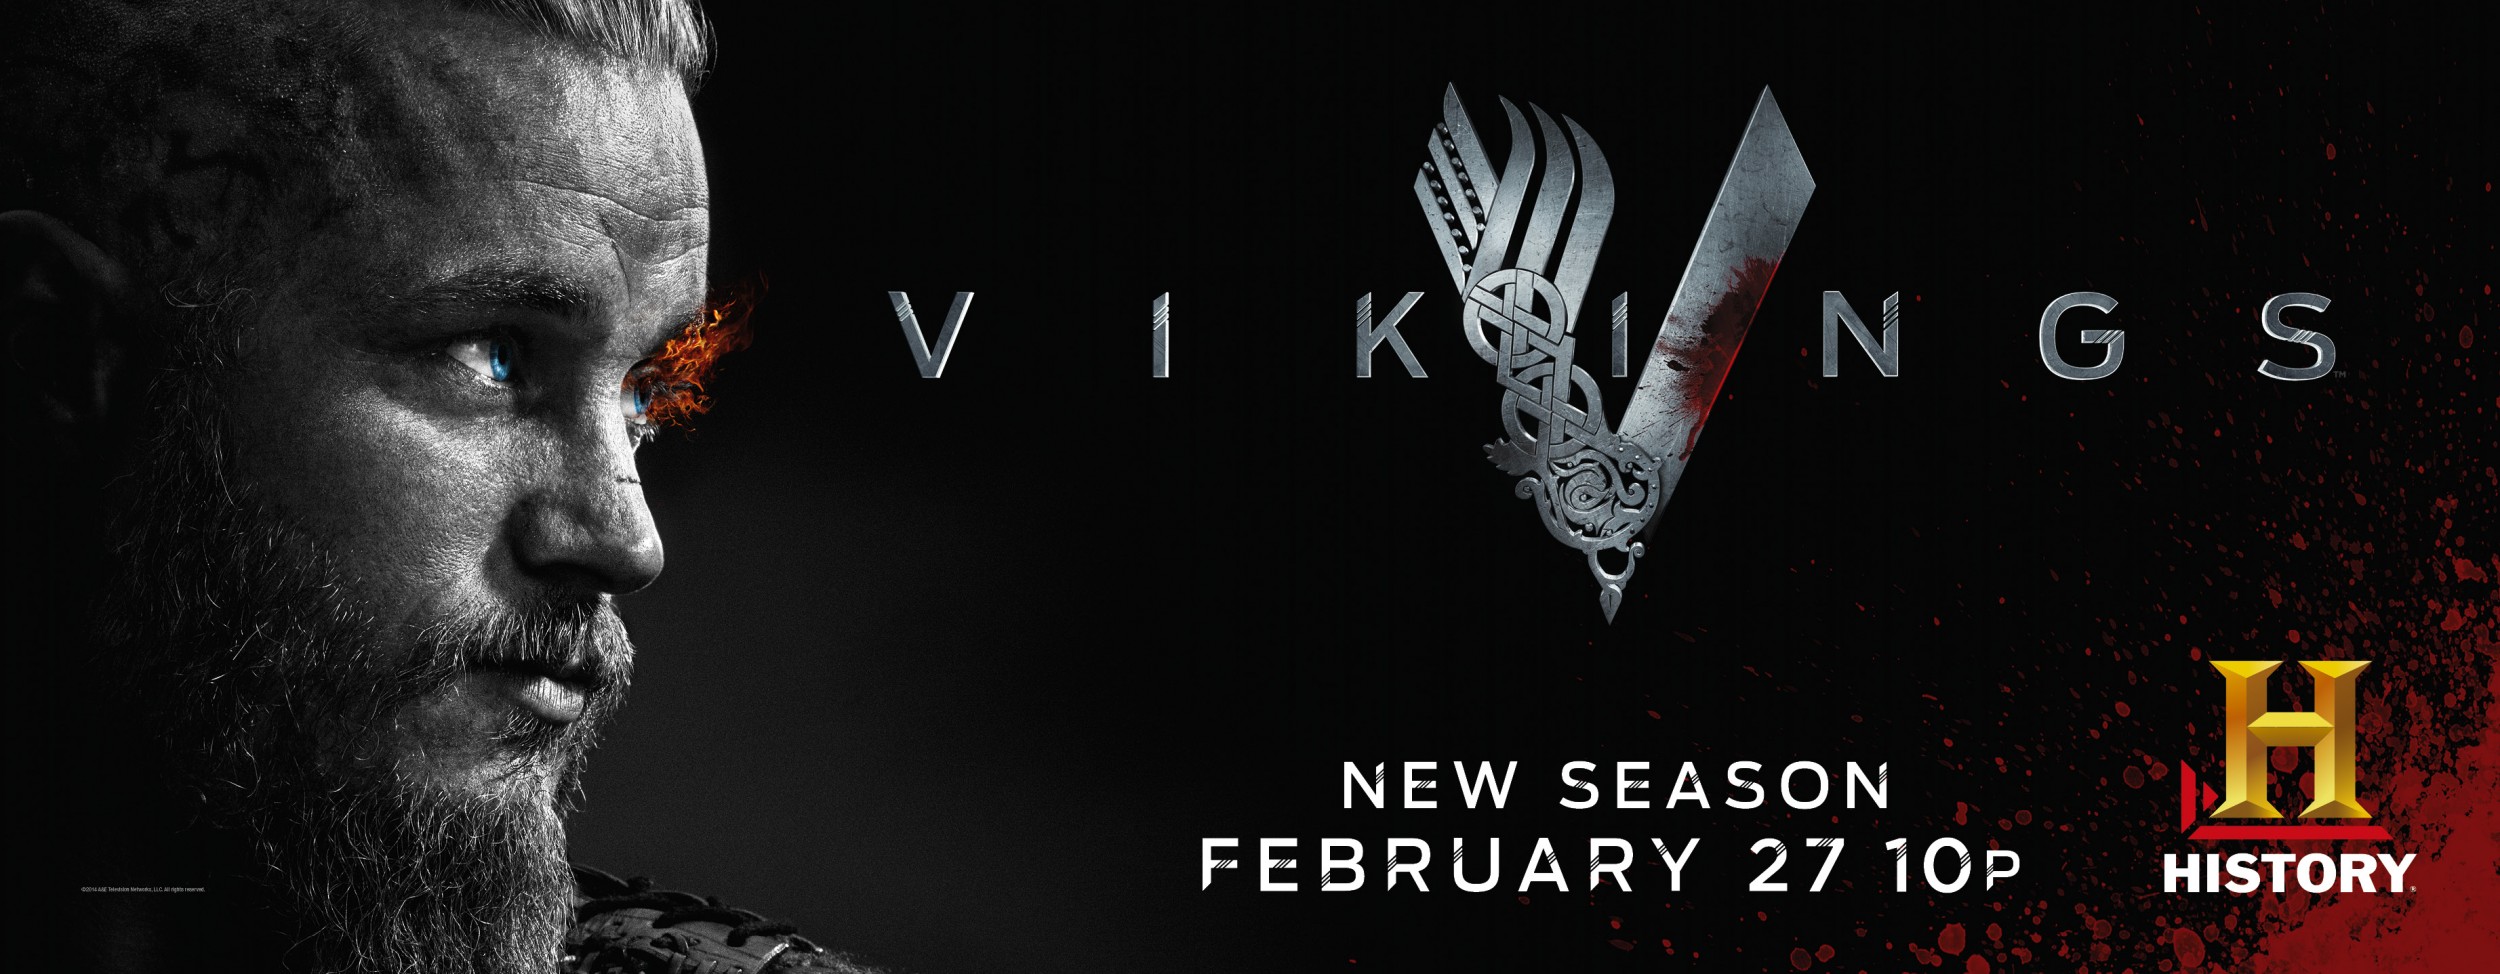 Mega Sized TV Poster Image for Vikings (#11 of 30)